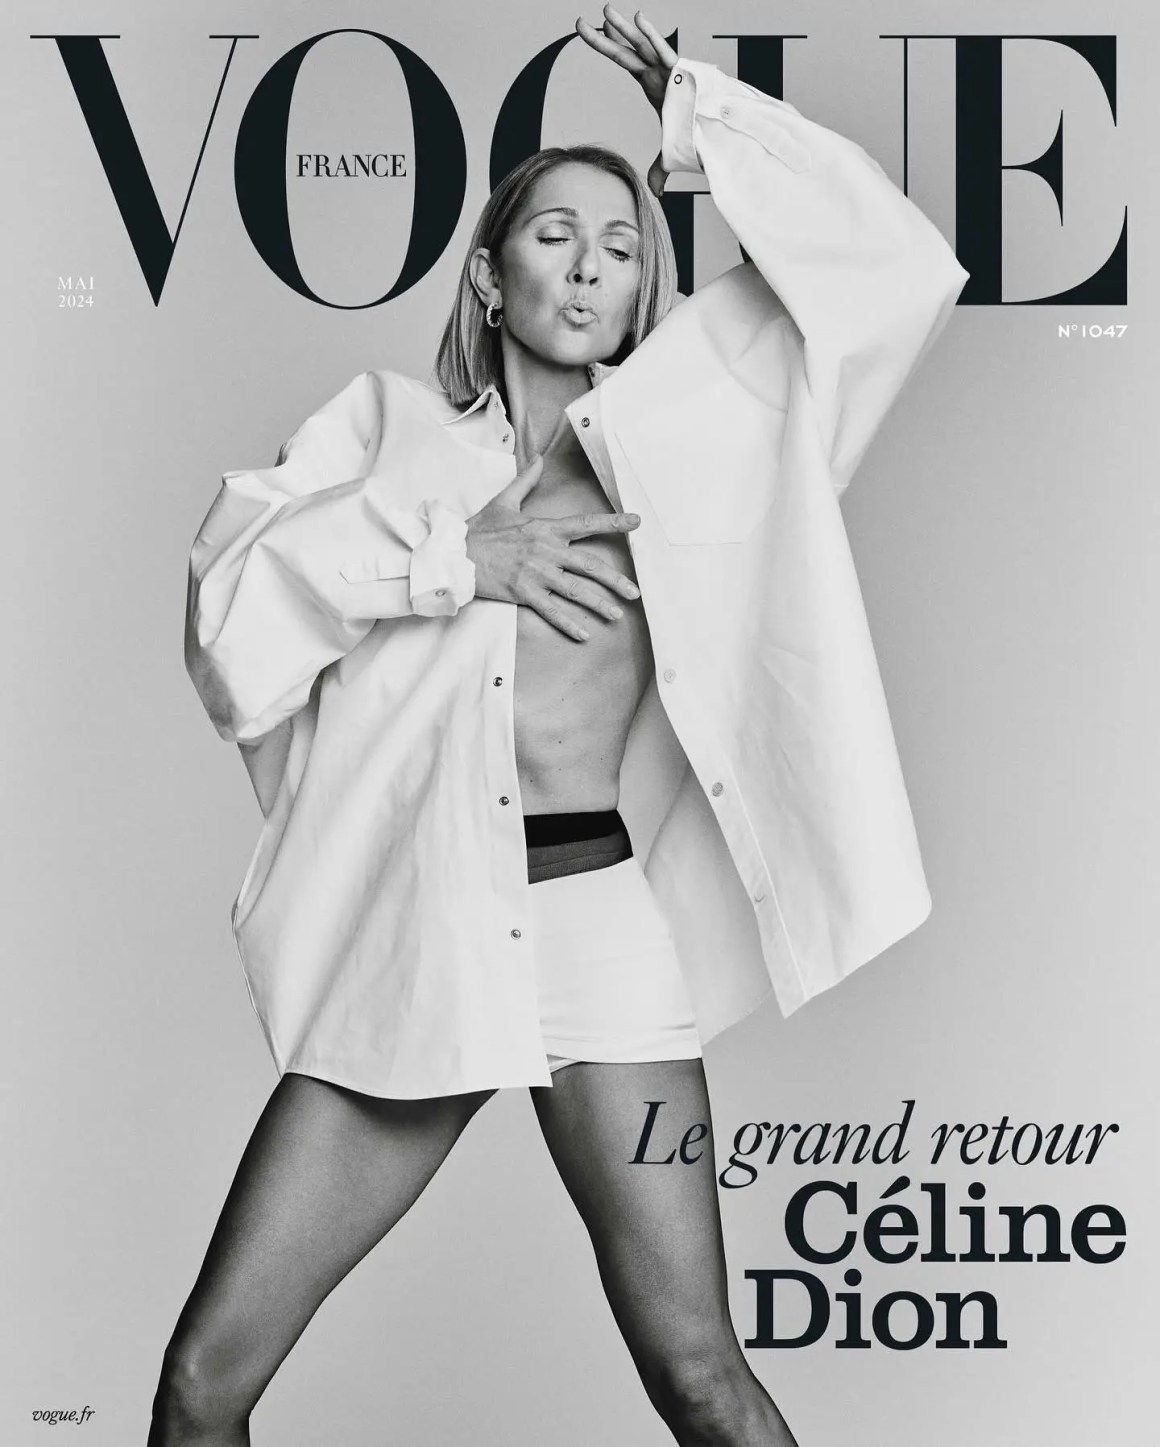 Celine Dion for Vogue France